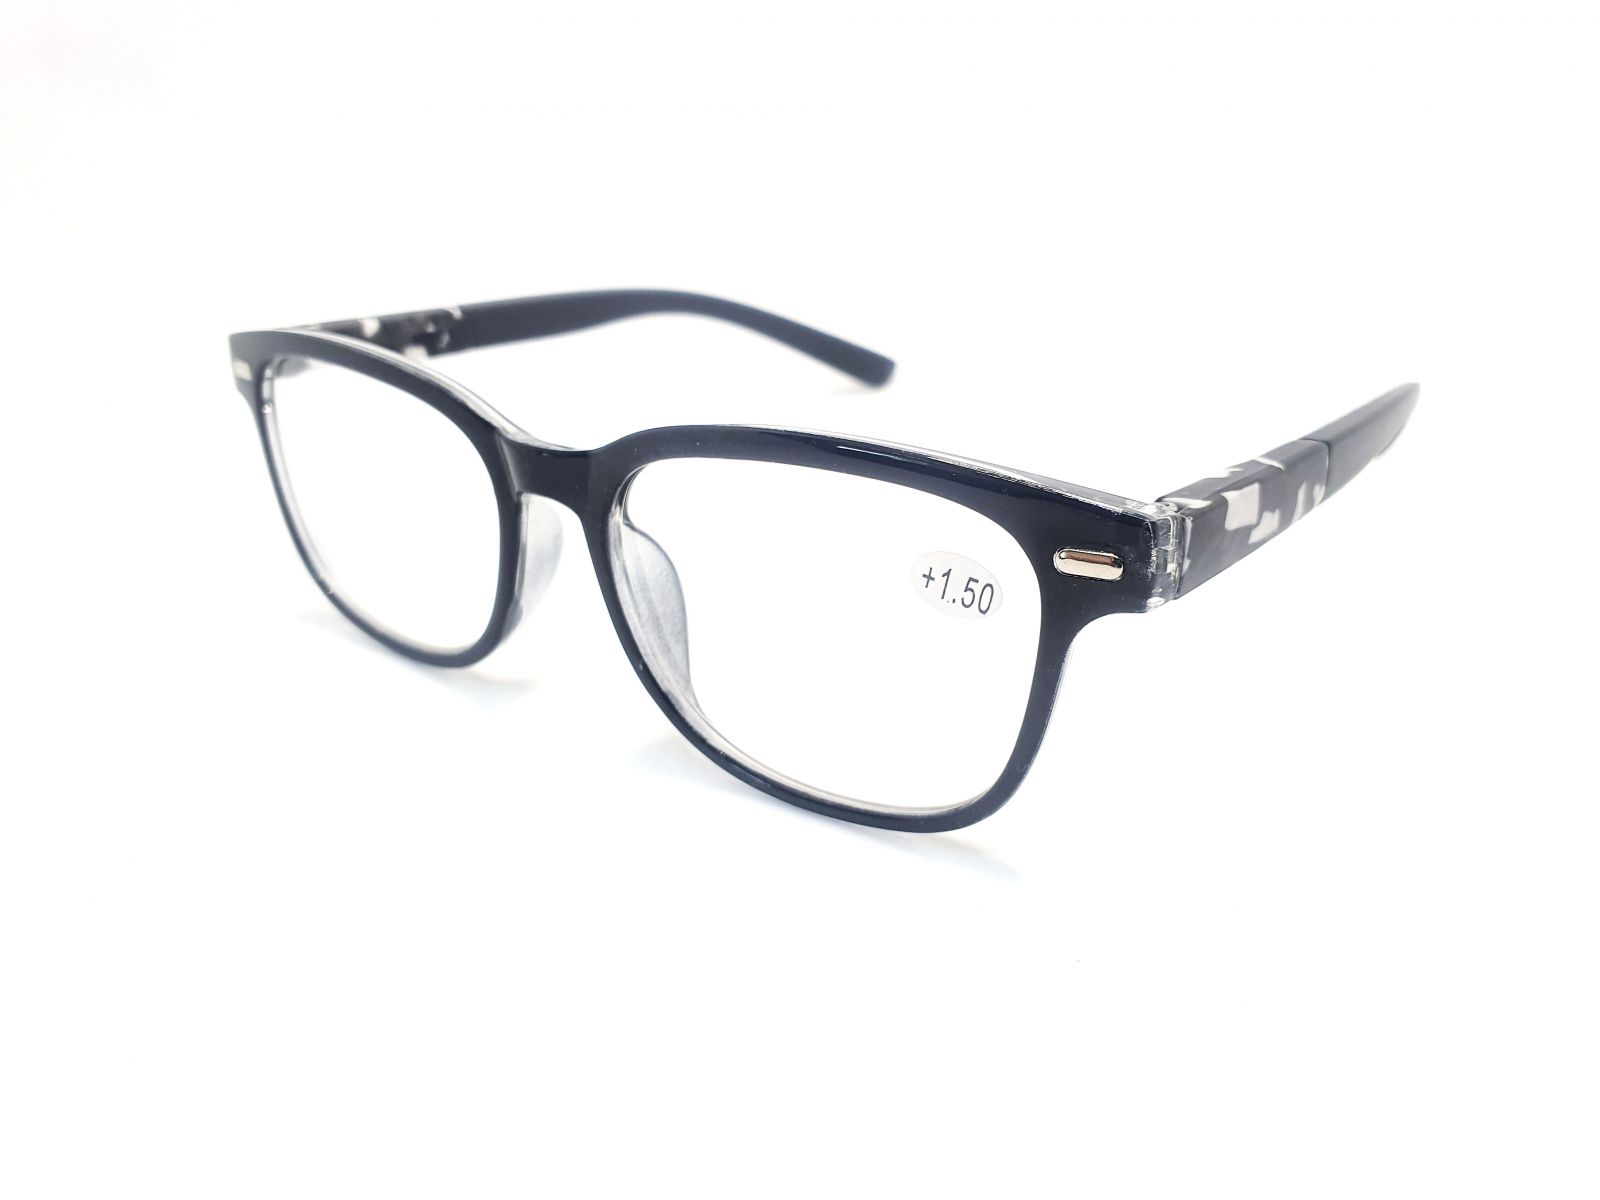 Dioptrické brýle Y18186 / +3,50 s pérováním šedý